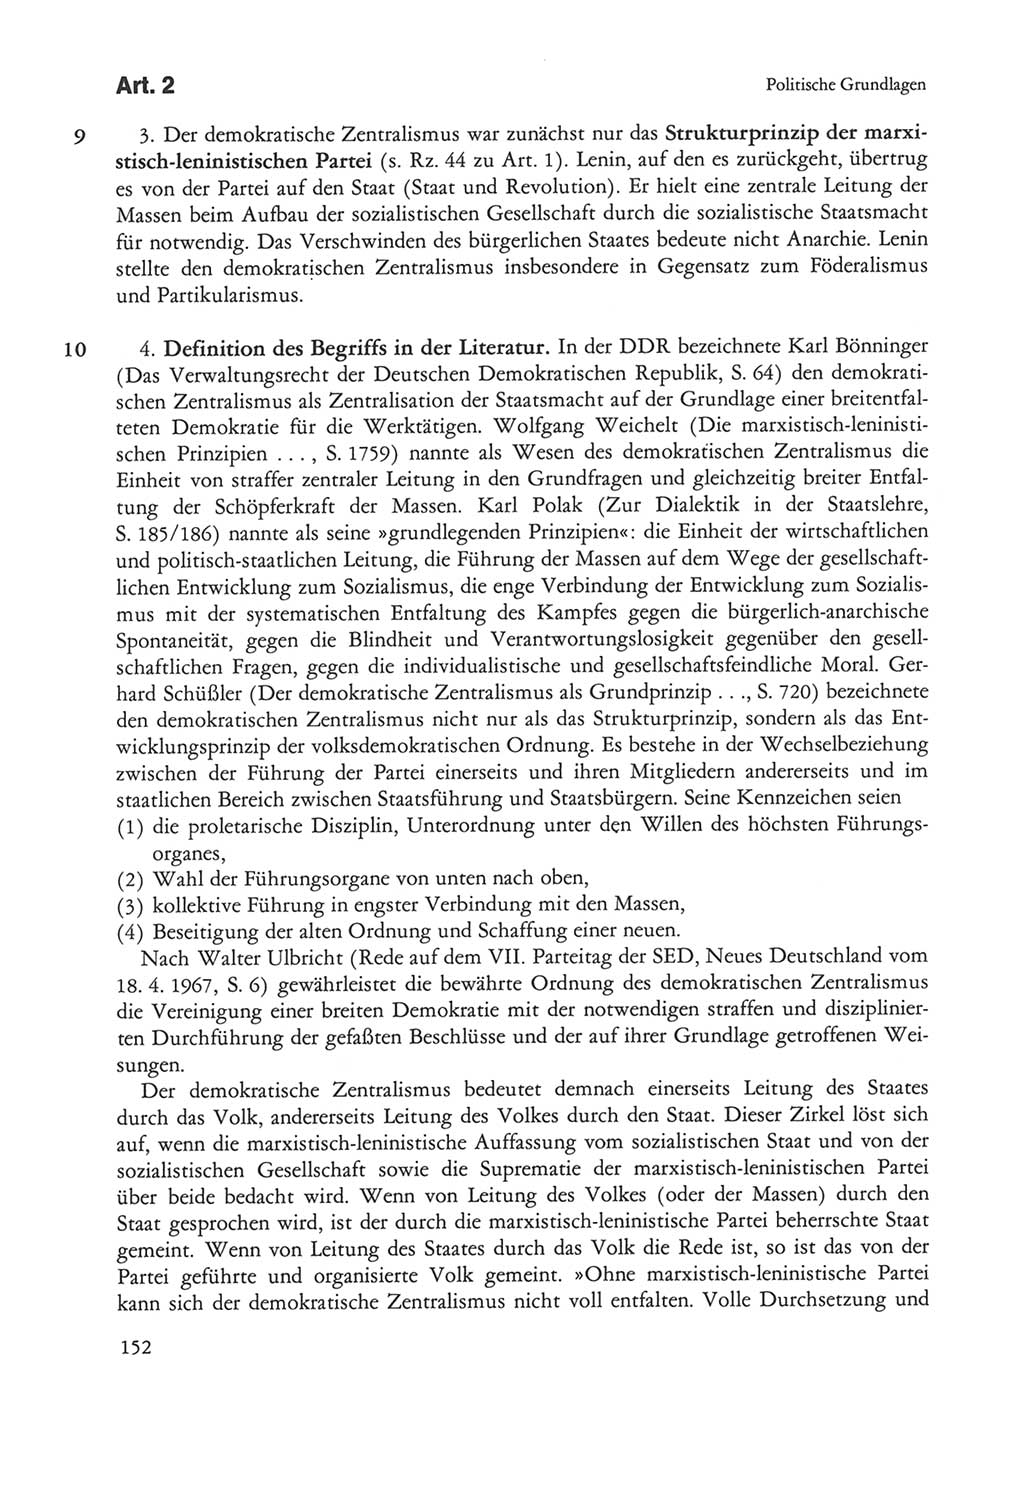 Die sozialistische Verfassung der Deutschen Demokratischen Republik (DDR), Kommentar mit einem Nachtrag 1997, Seite 152 (Soz. Verf. DDR Komm. Nachtr. 1997, S. 152)